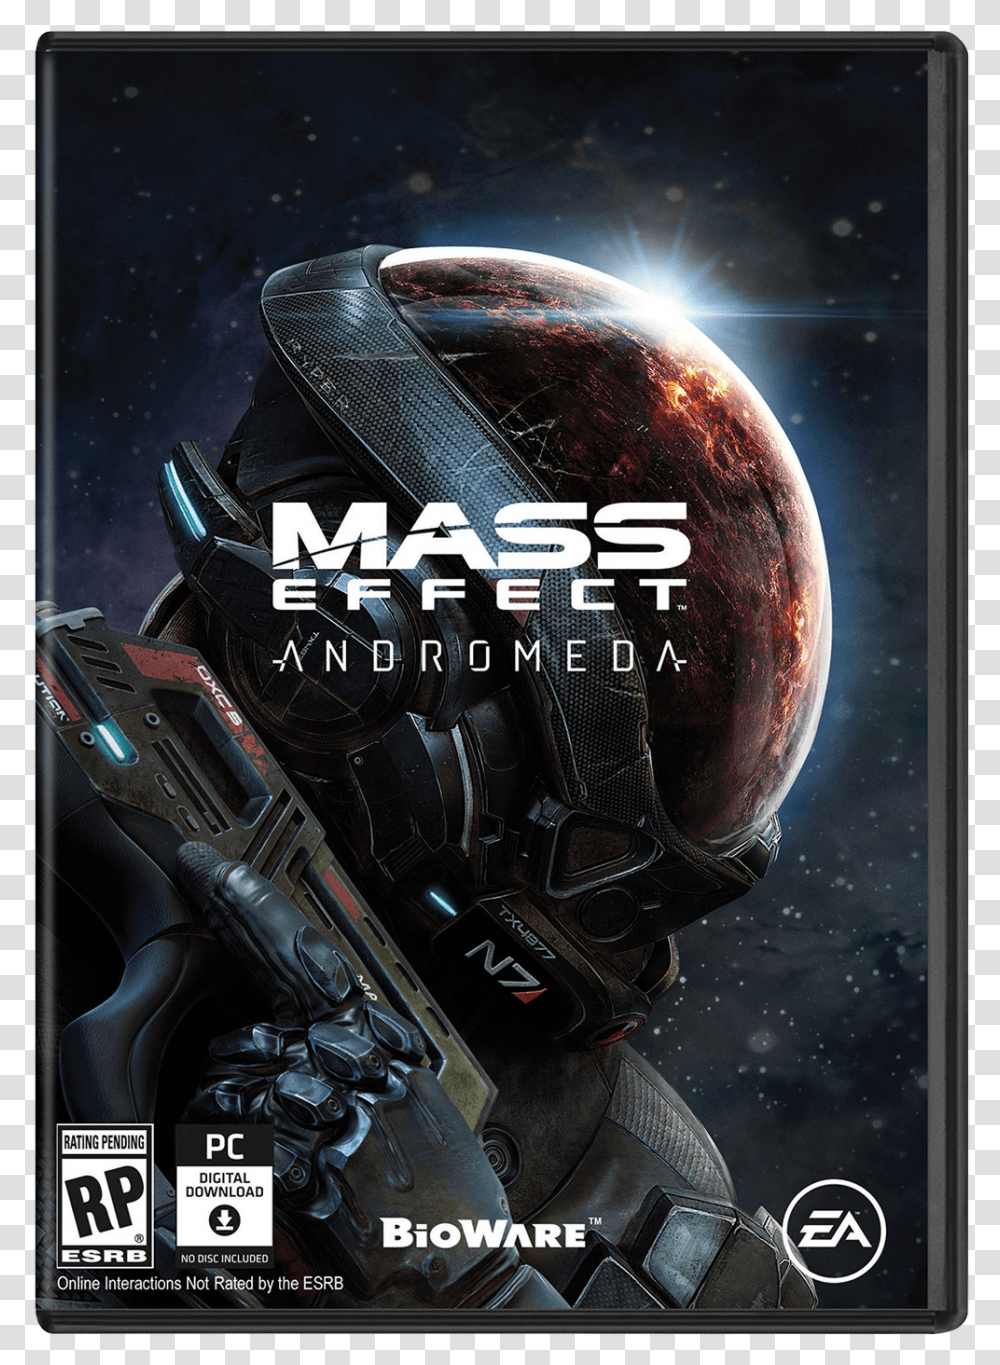 Andromeda Release Date Announced Mass Effect Andromeda Box Art, Helmet, Apparel, Gun Transparent Png